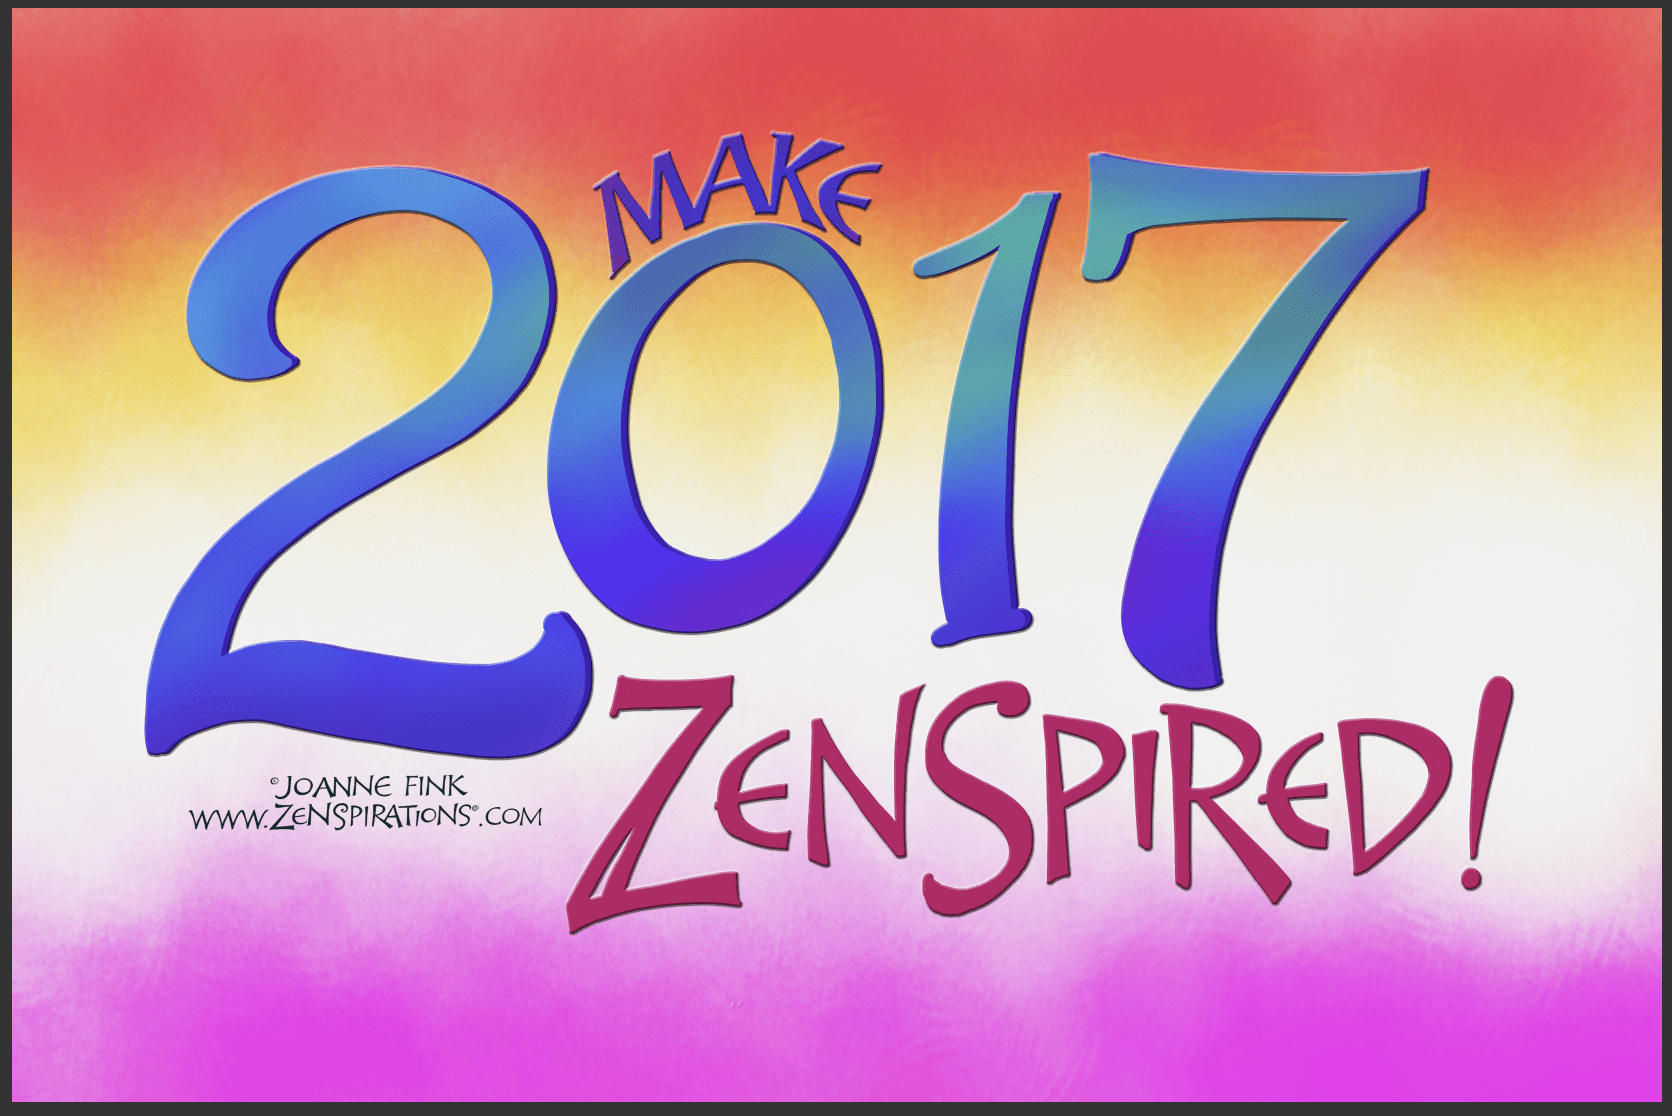 zenspirations_by_joanne_fink_new_year_blog_2016_zenspired